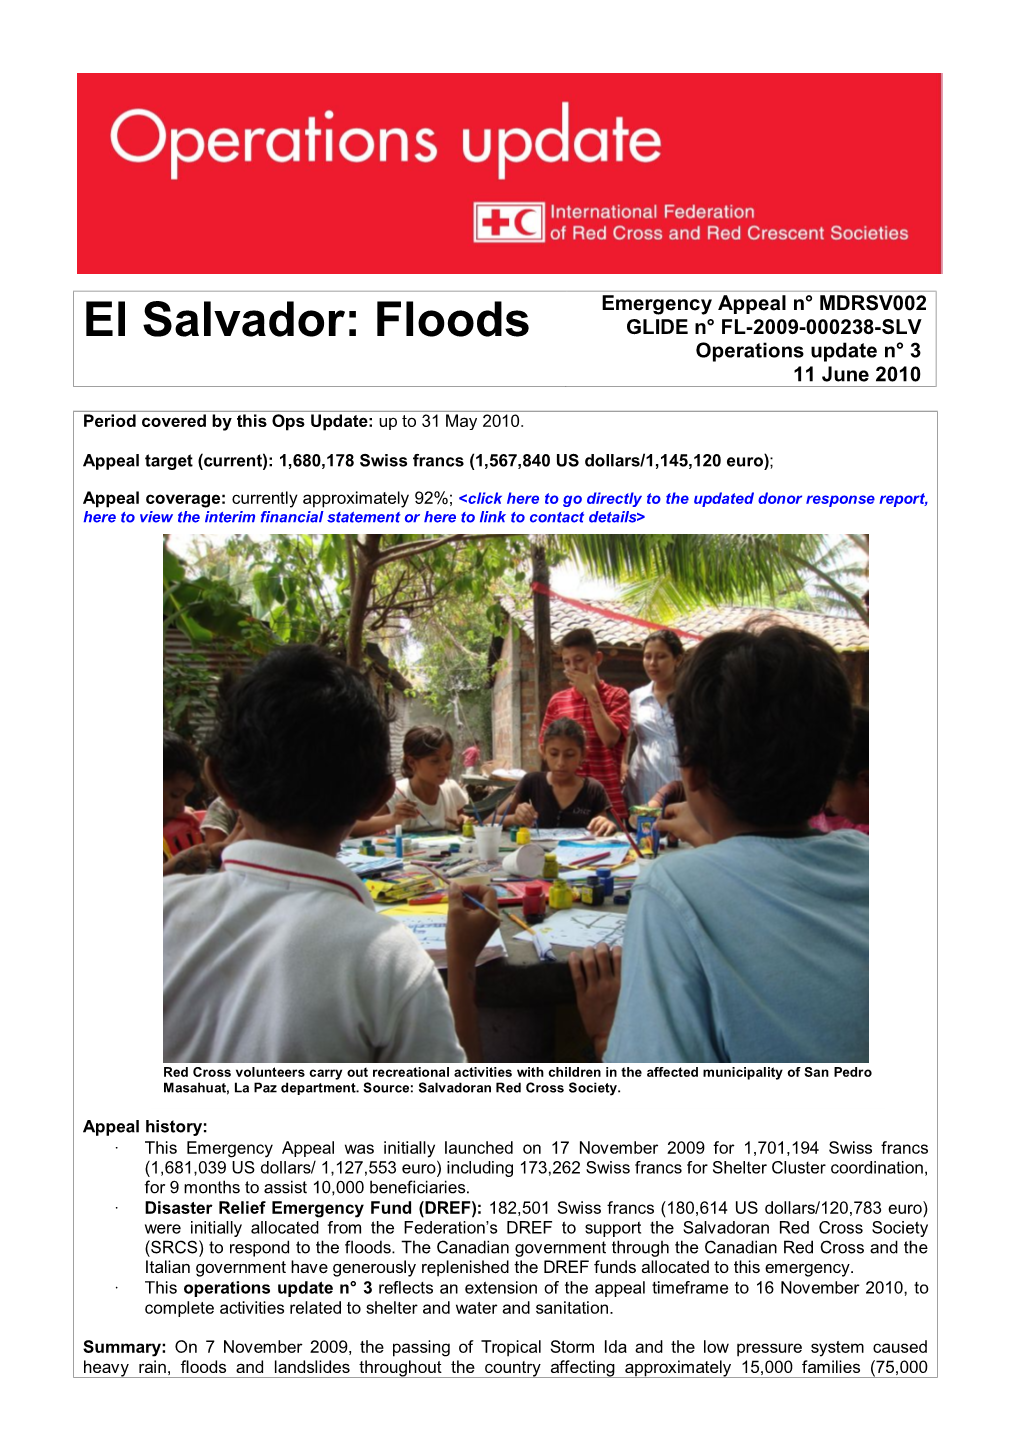 El Salvador: Floods Emergency Appeal N° MDRSV002 GLIDE N° FL